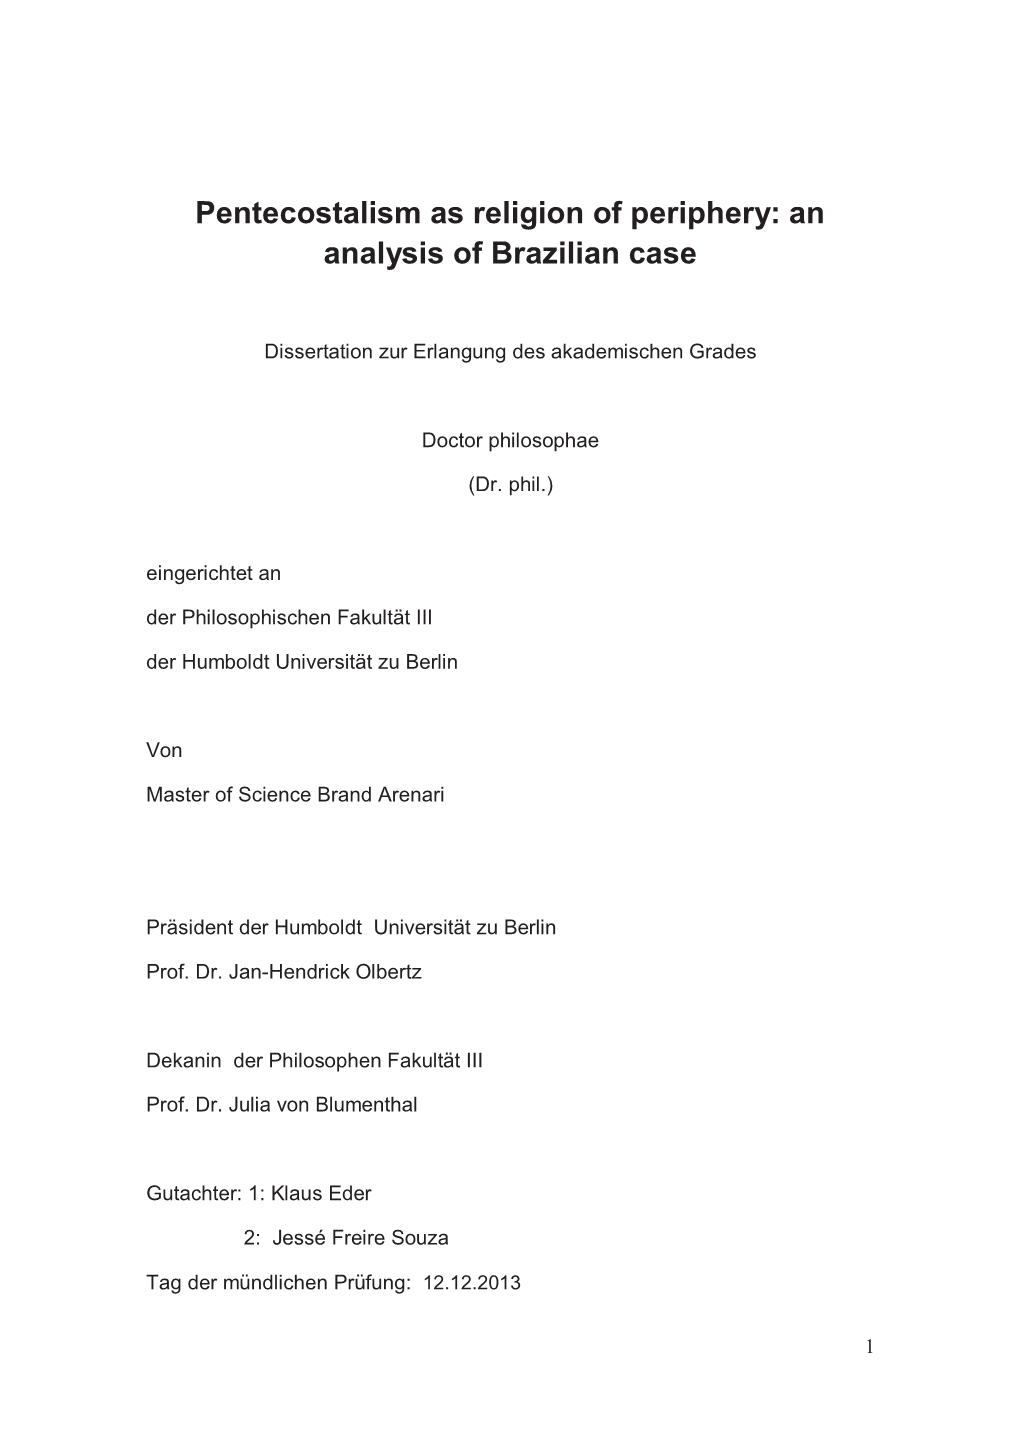 Pentecostalism As Religion of Periphery: an Analysis of Brazilian Case